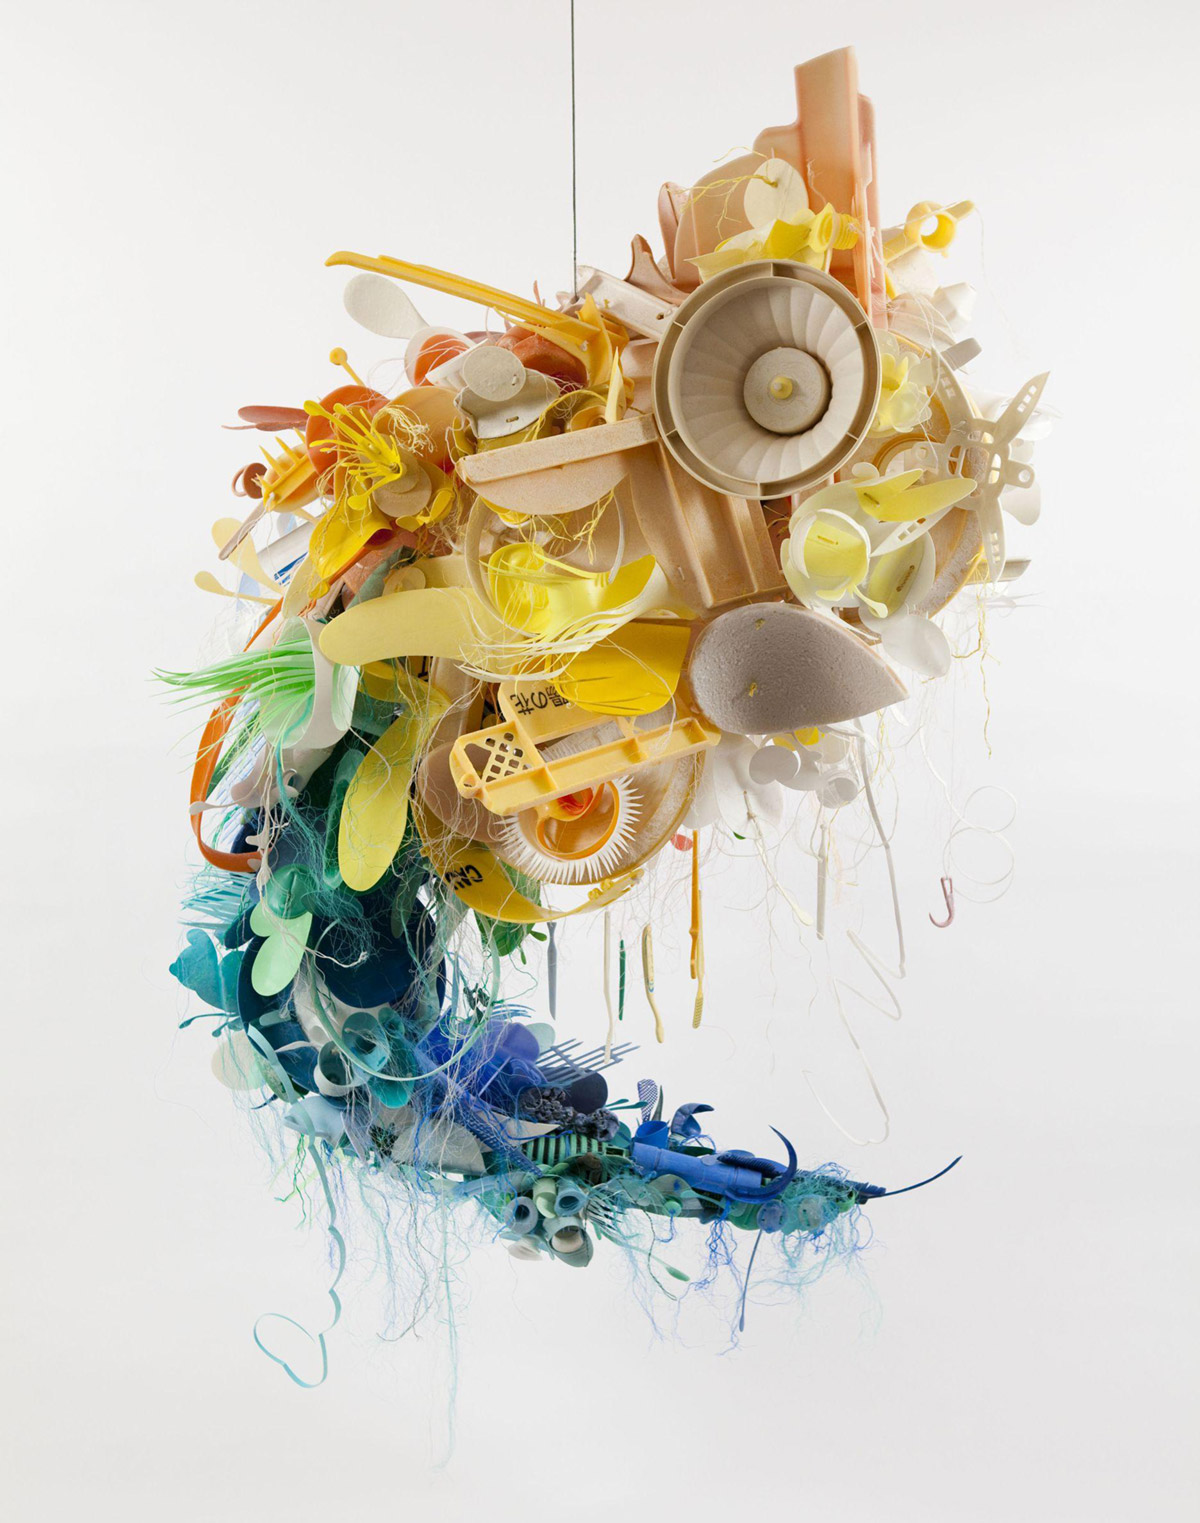 plastic-waste-sculpture-aurora-robson-07